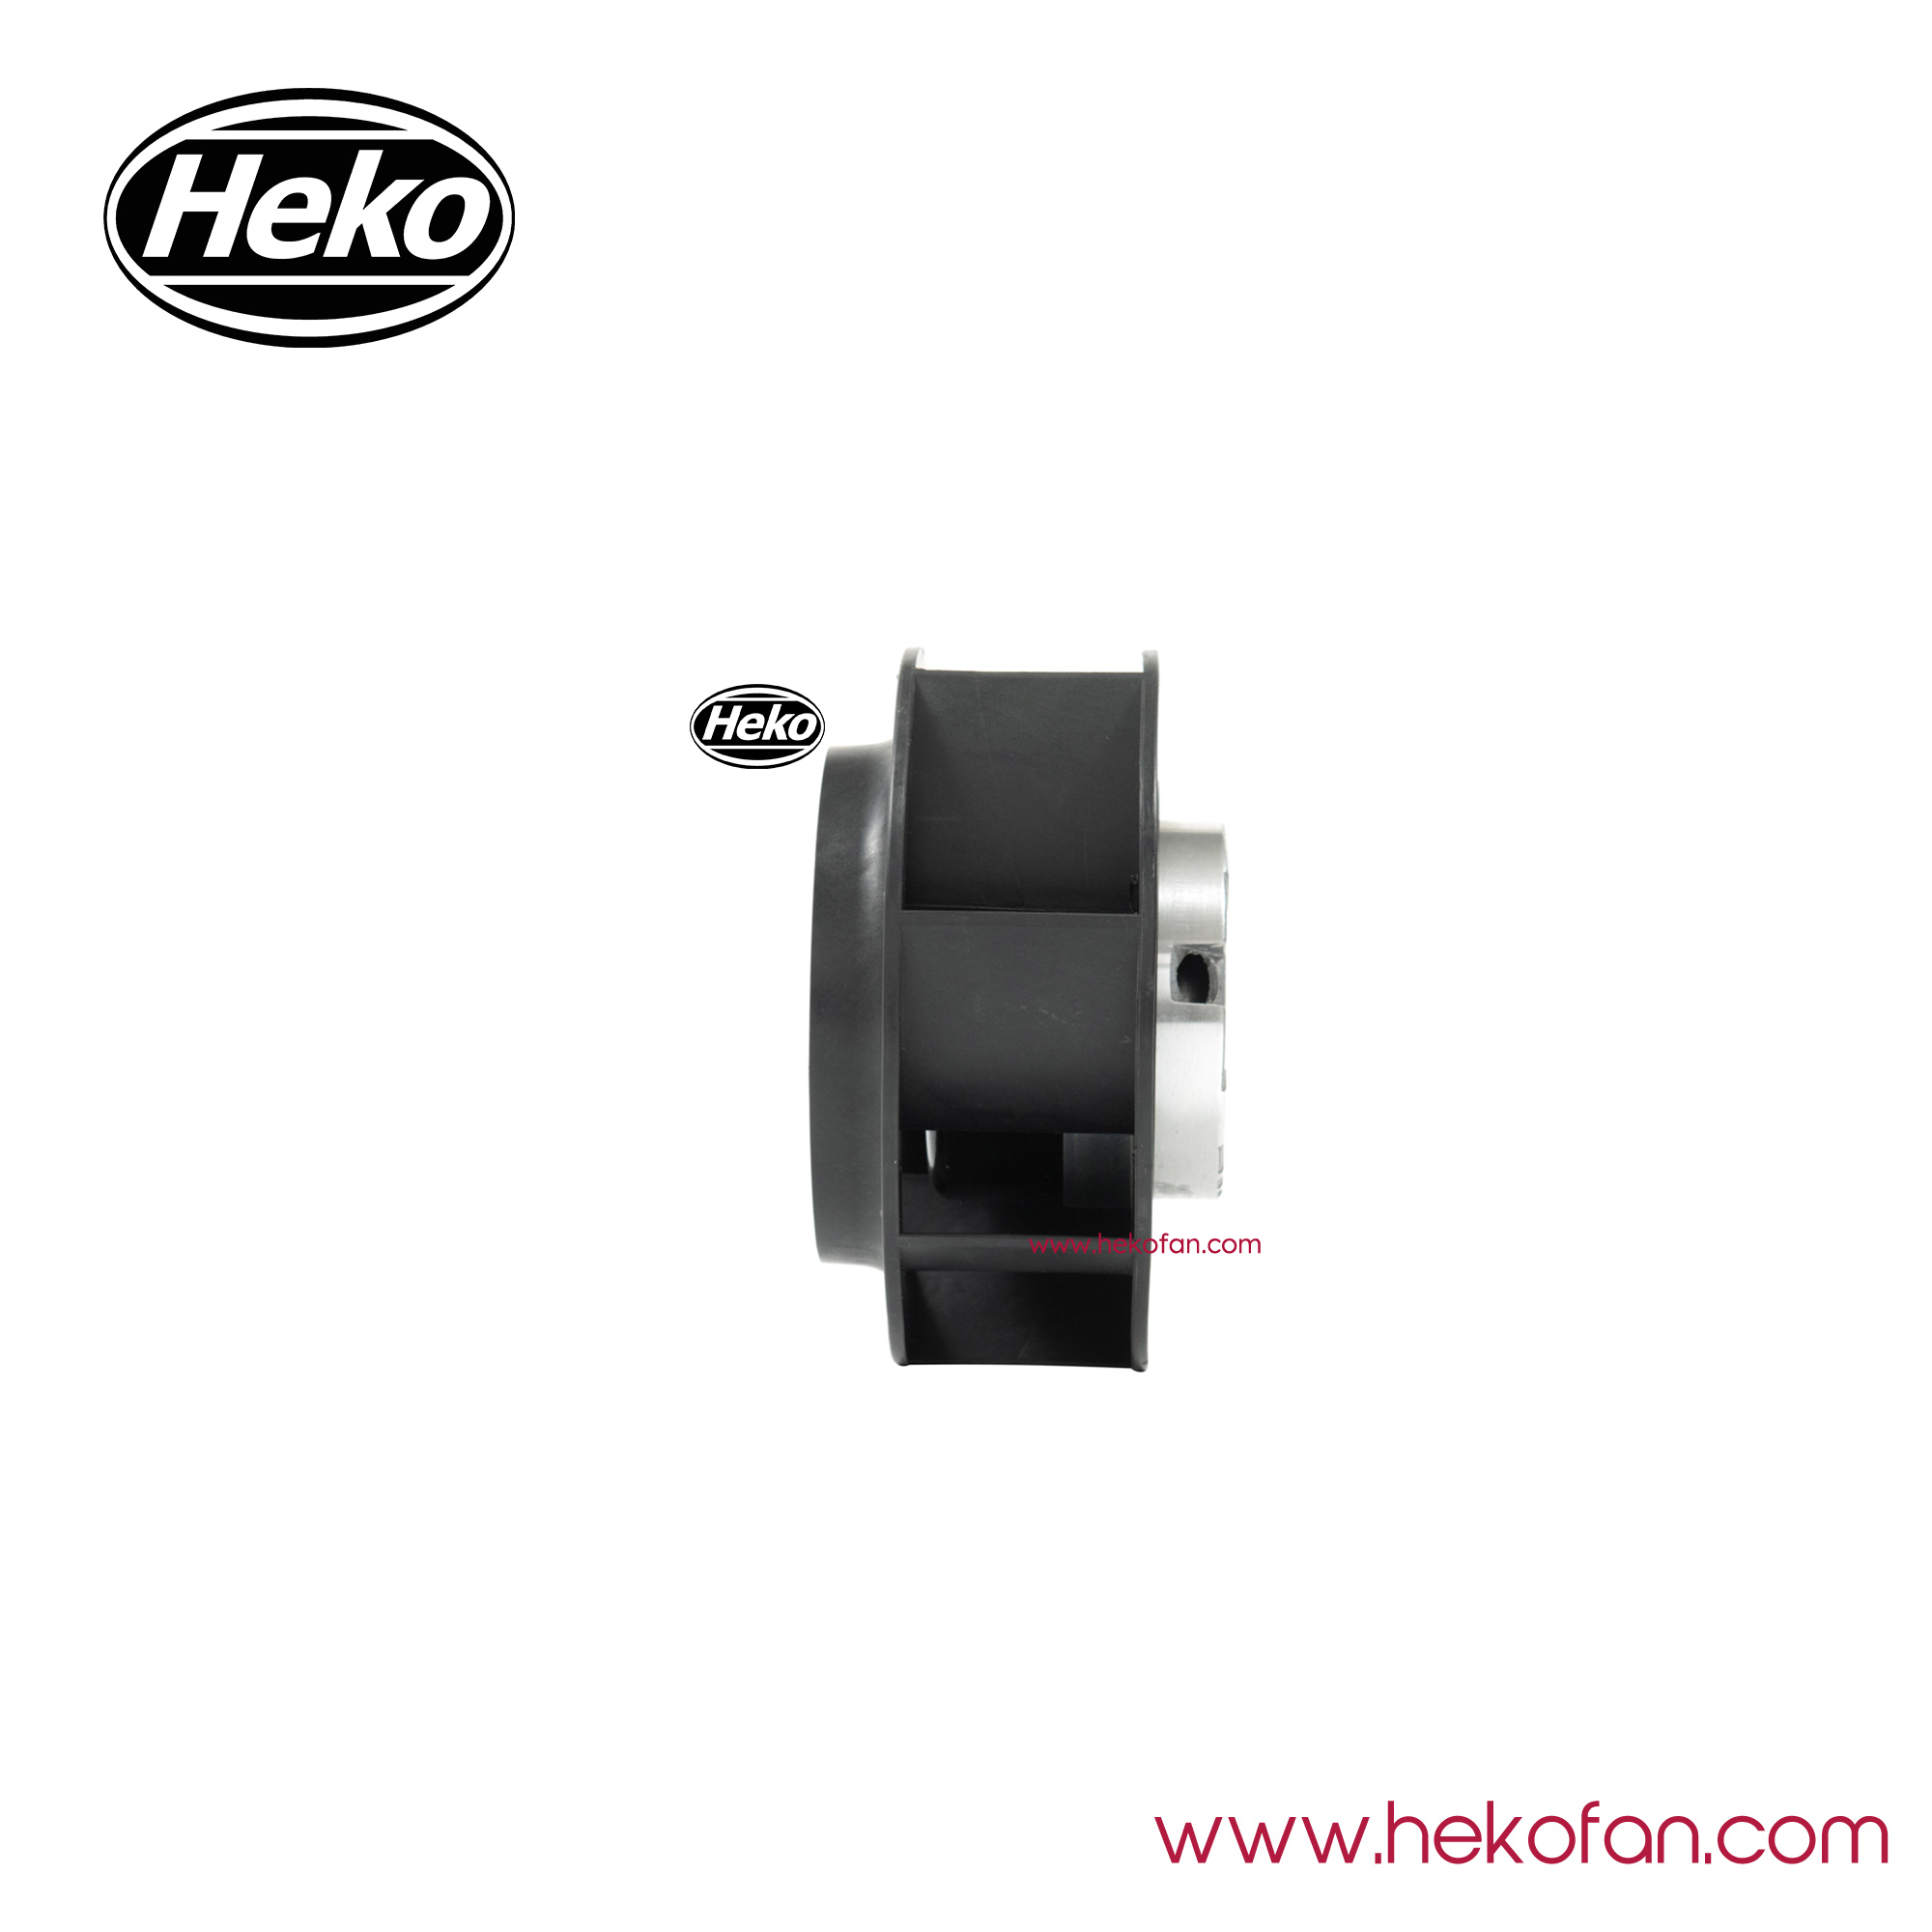 HEKO DC133mm Ventilateur centrifuge arrière à grande vitesse et longue durée de vie